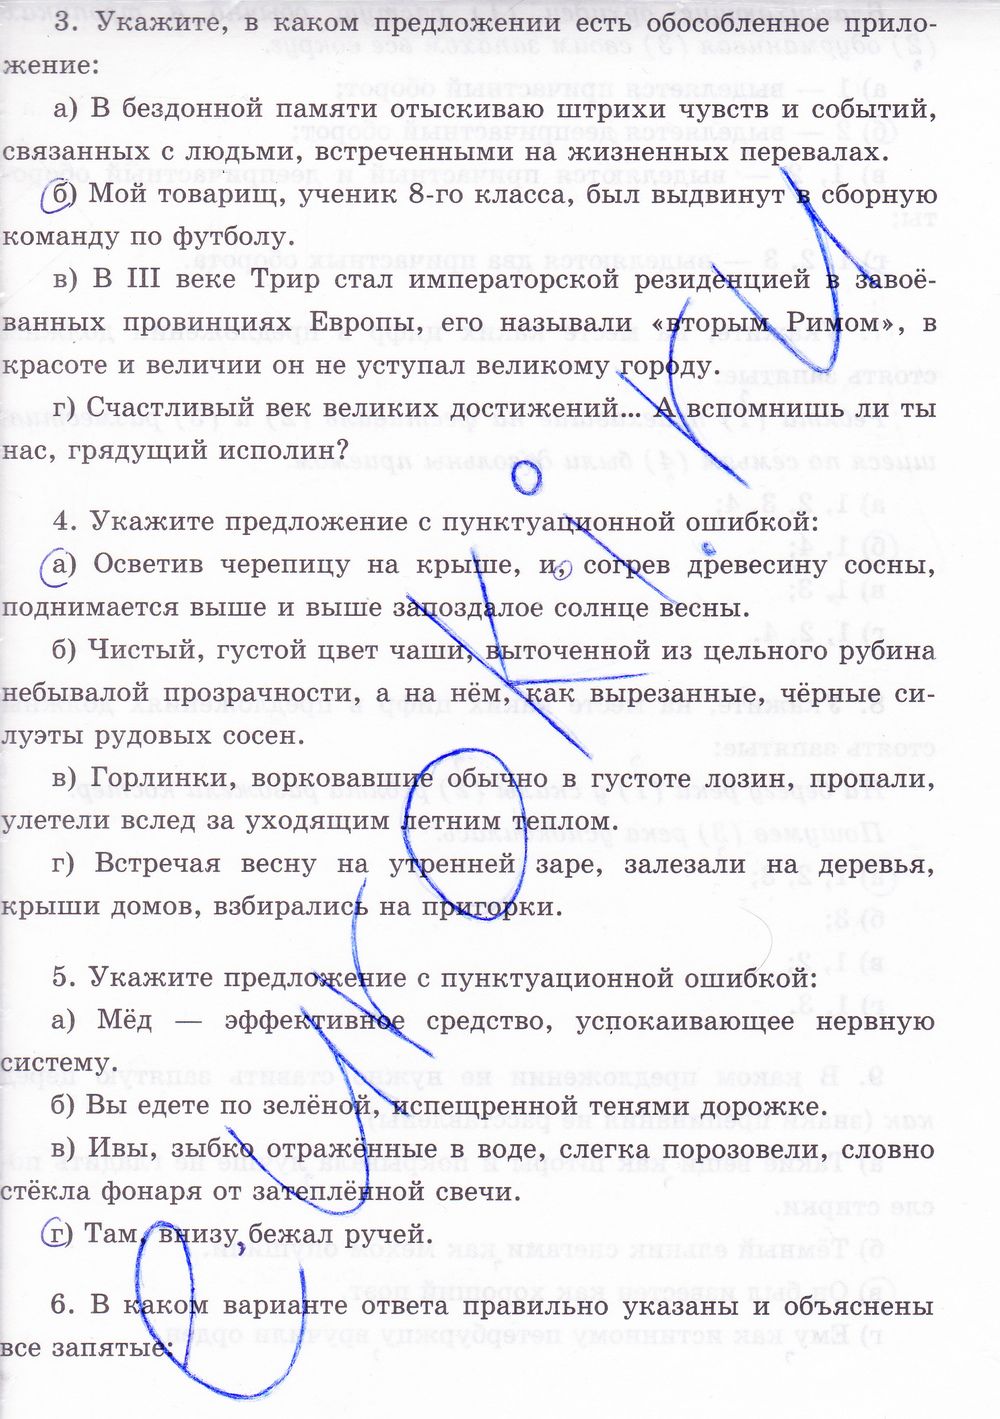 ГДЗ Русский язык 8 класс - стр. 85